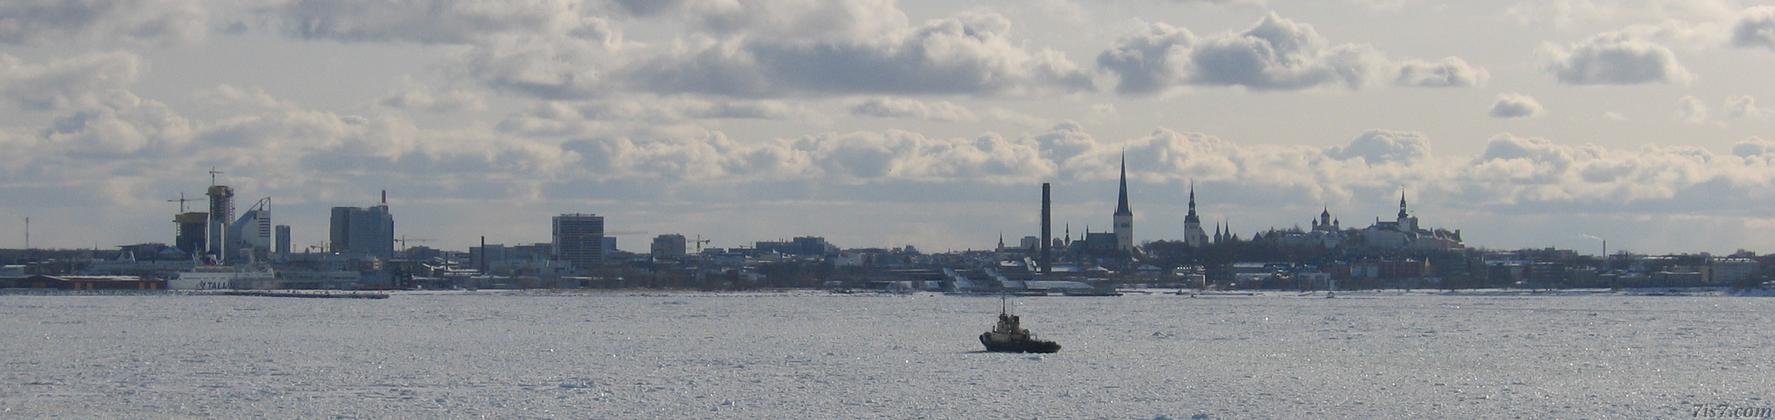 Talllinn cityscape seen from frozen sea